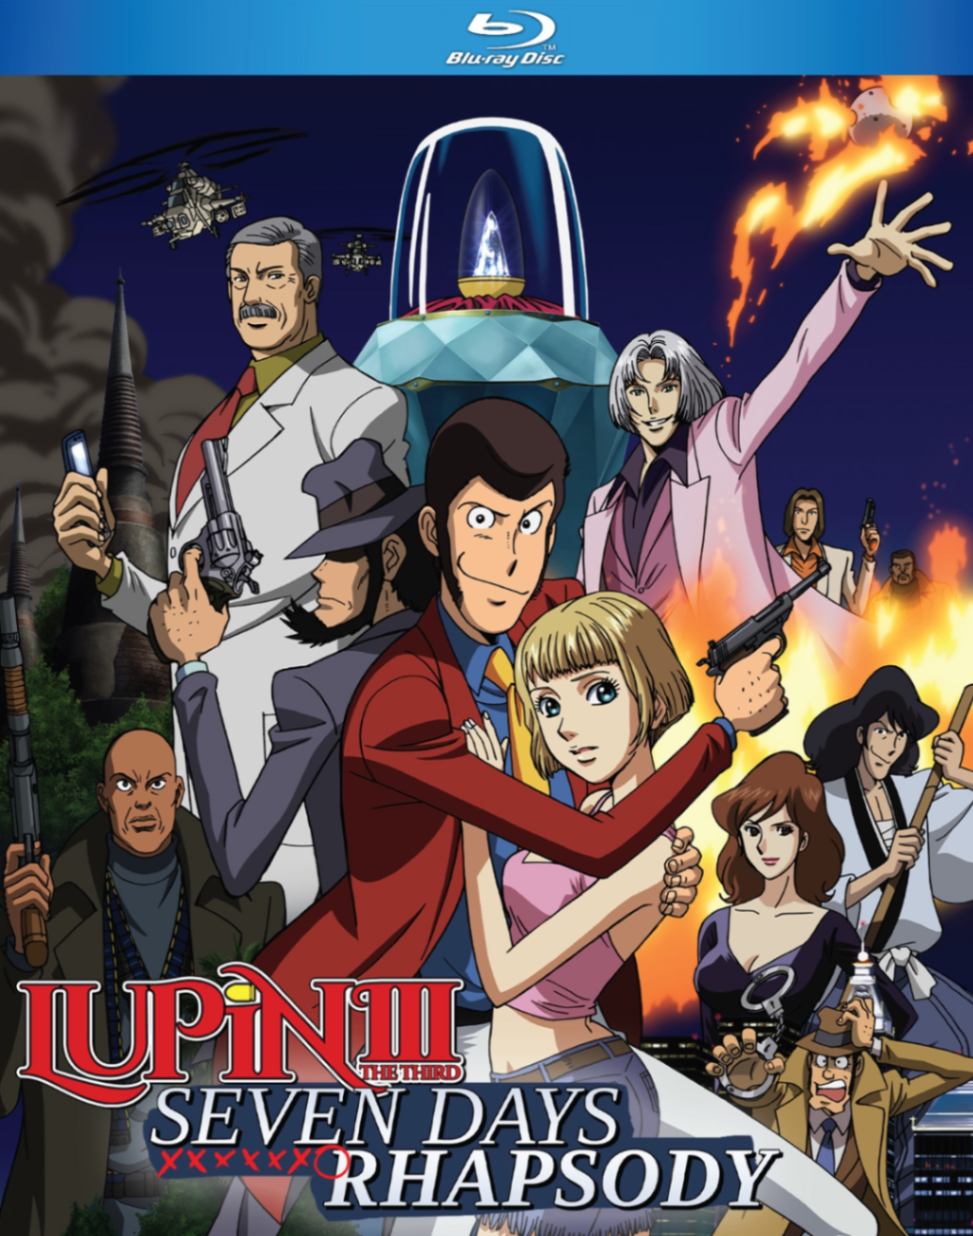 ルパン三世 セブンデイズ・ラプソディ TVスペシャルシリーズ第18作 2006年 ブルーレイ【Blu-ray】